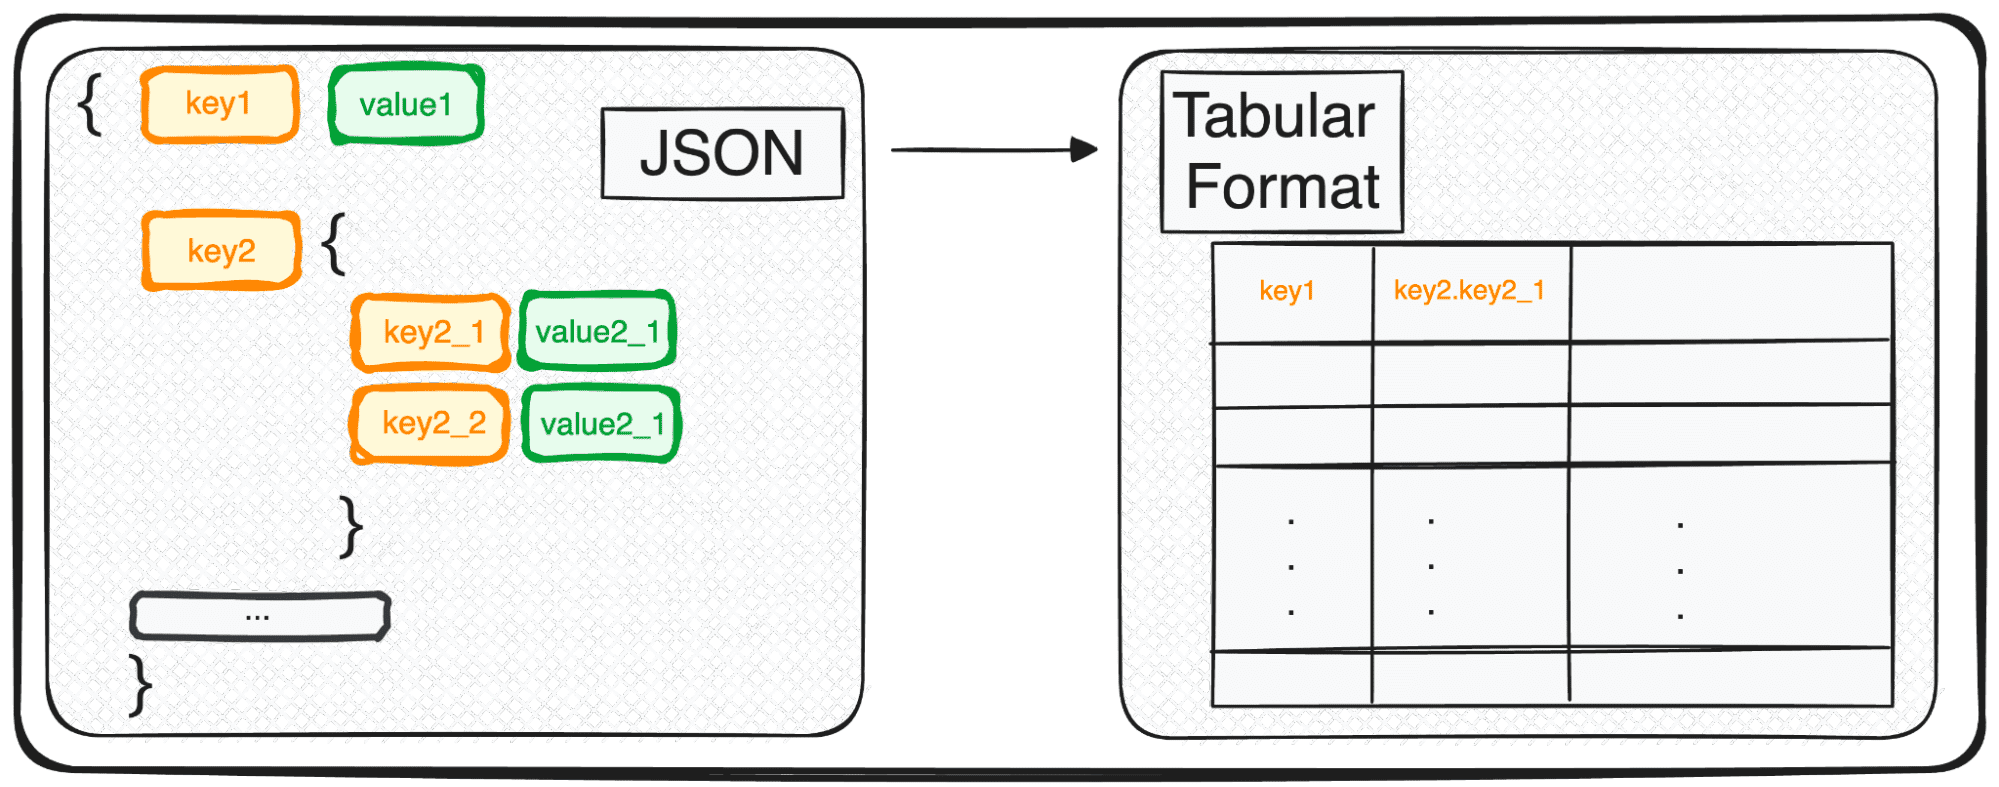 Conversione di JSON in DataFrames Panda: analizzarli nel modo giusto